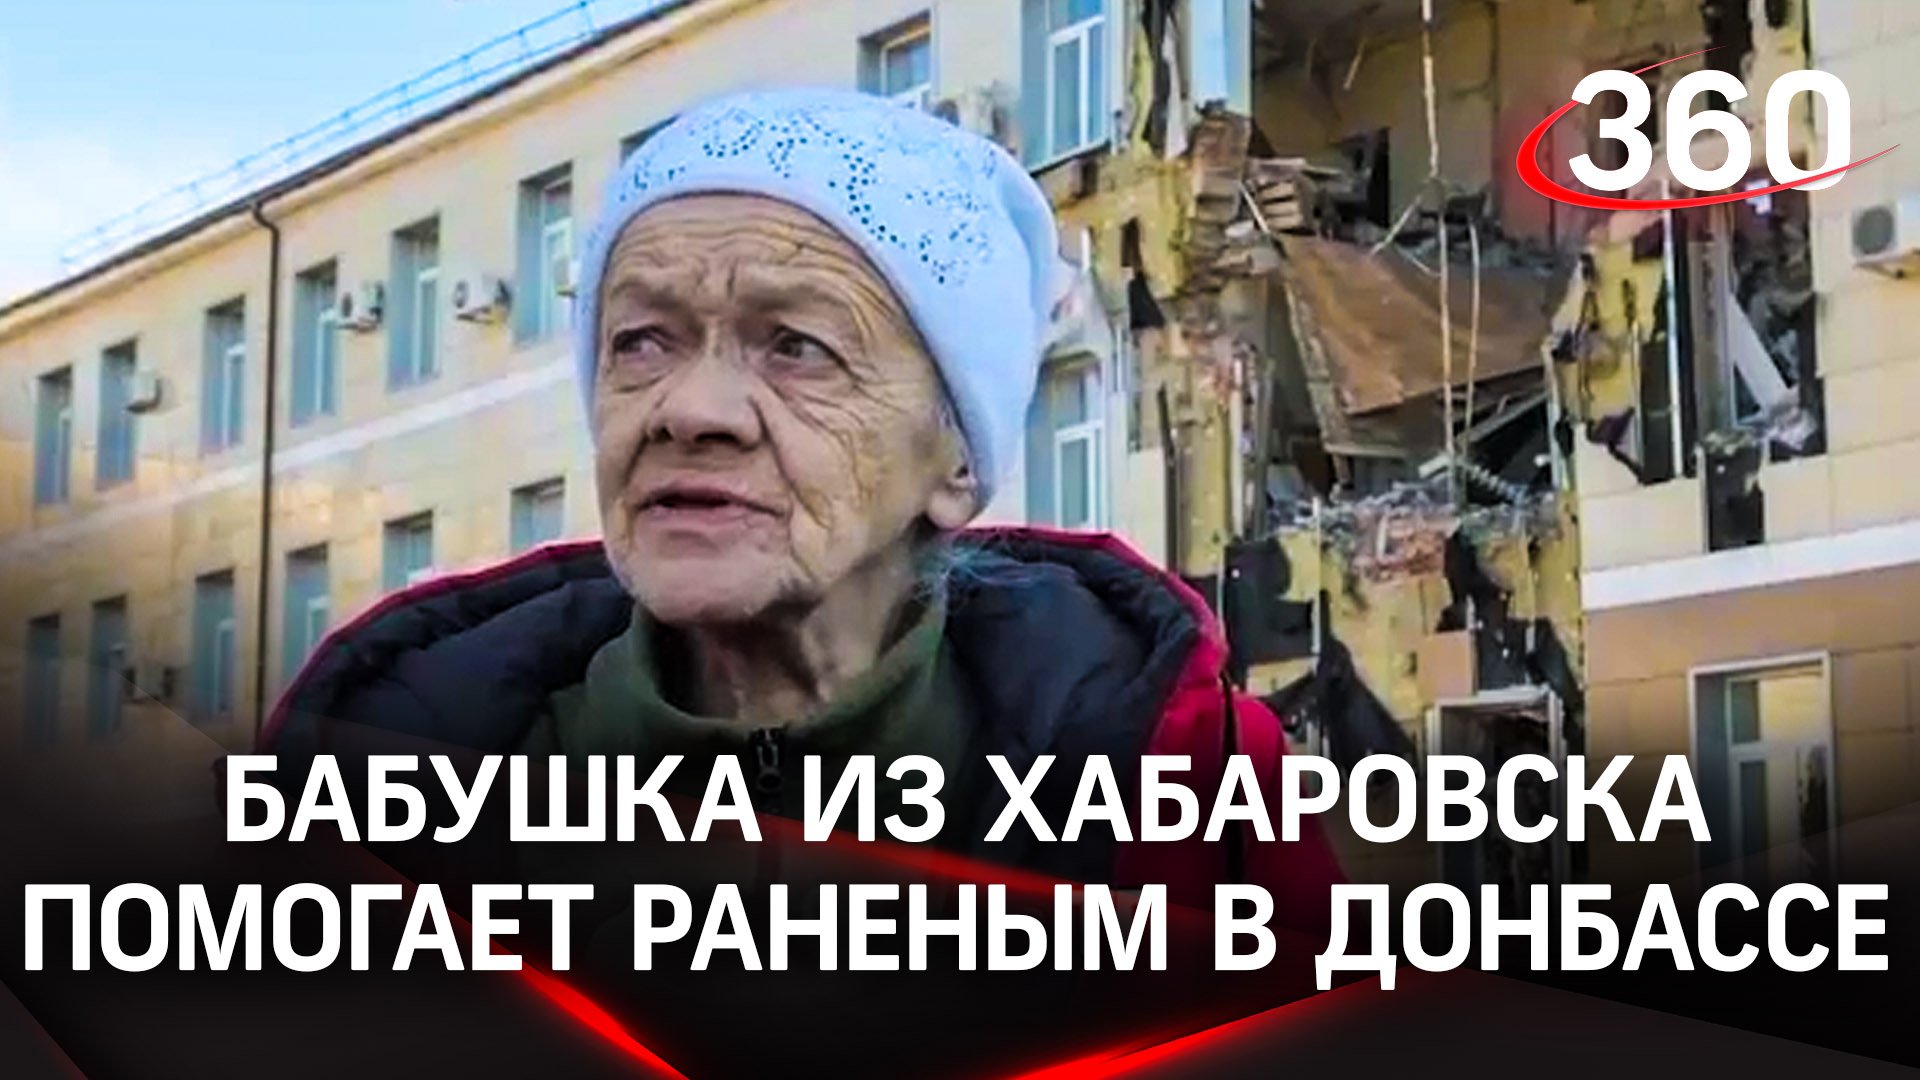 71-летняя пенсионерка из Хабаровска приехала санитаркой в Донбасс